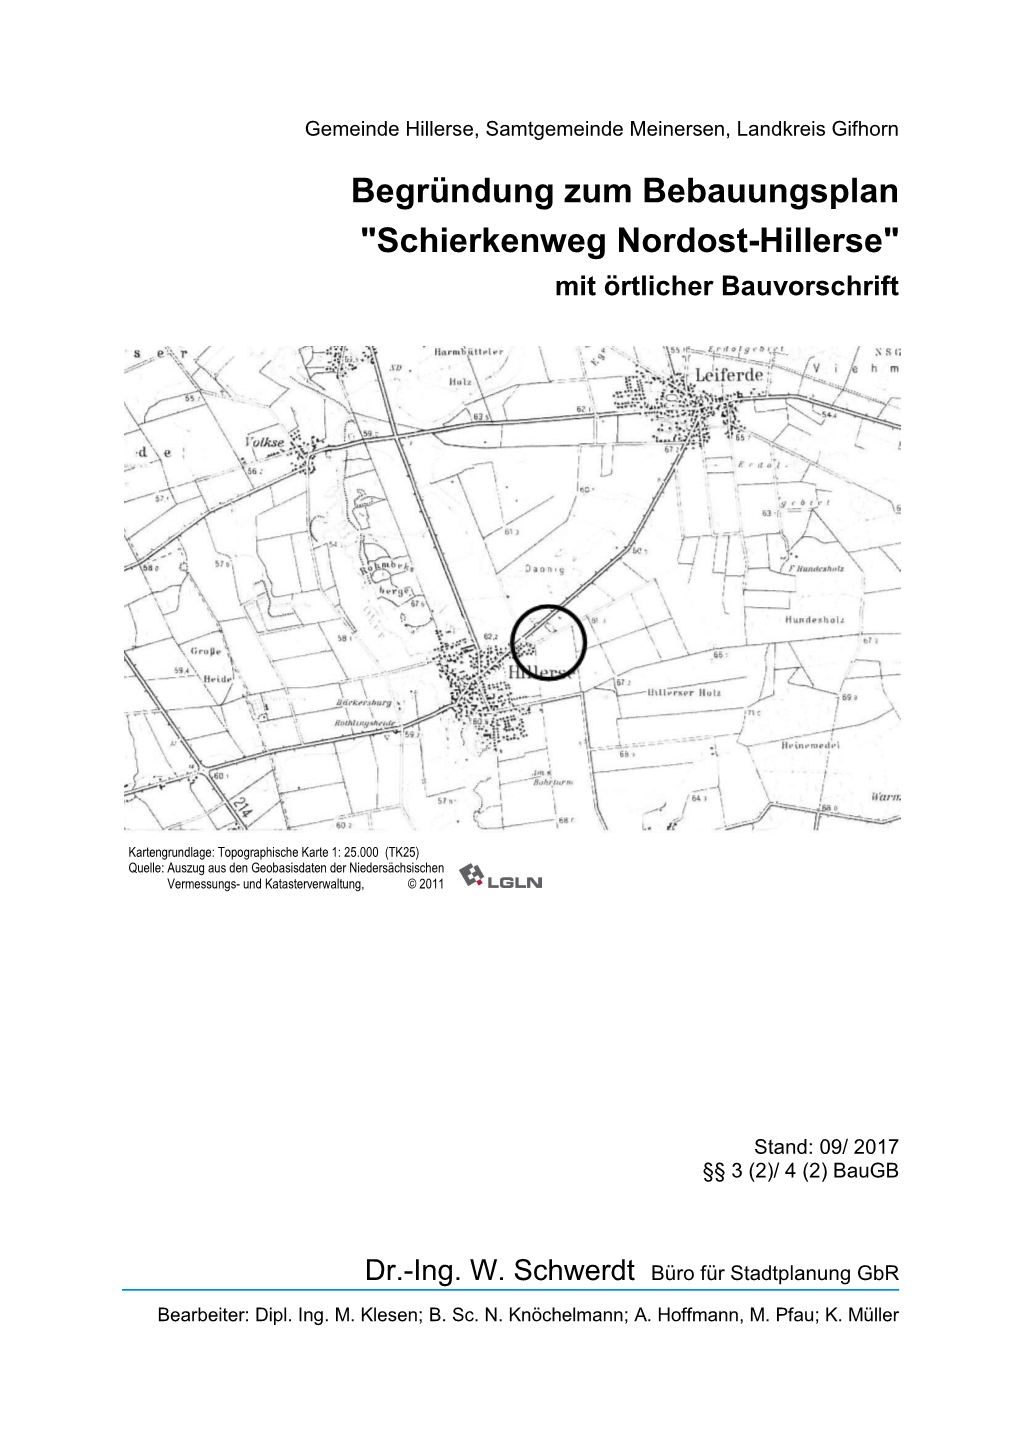 Schierkenweg Nordost-Hillerse" Mit Örtlicher Bauvorschrift